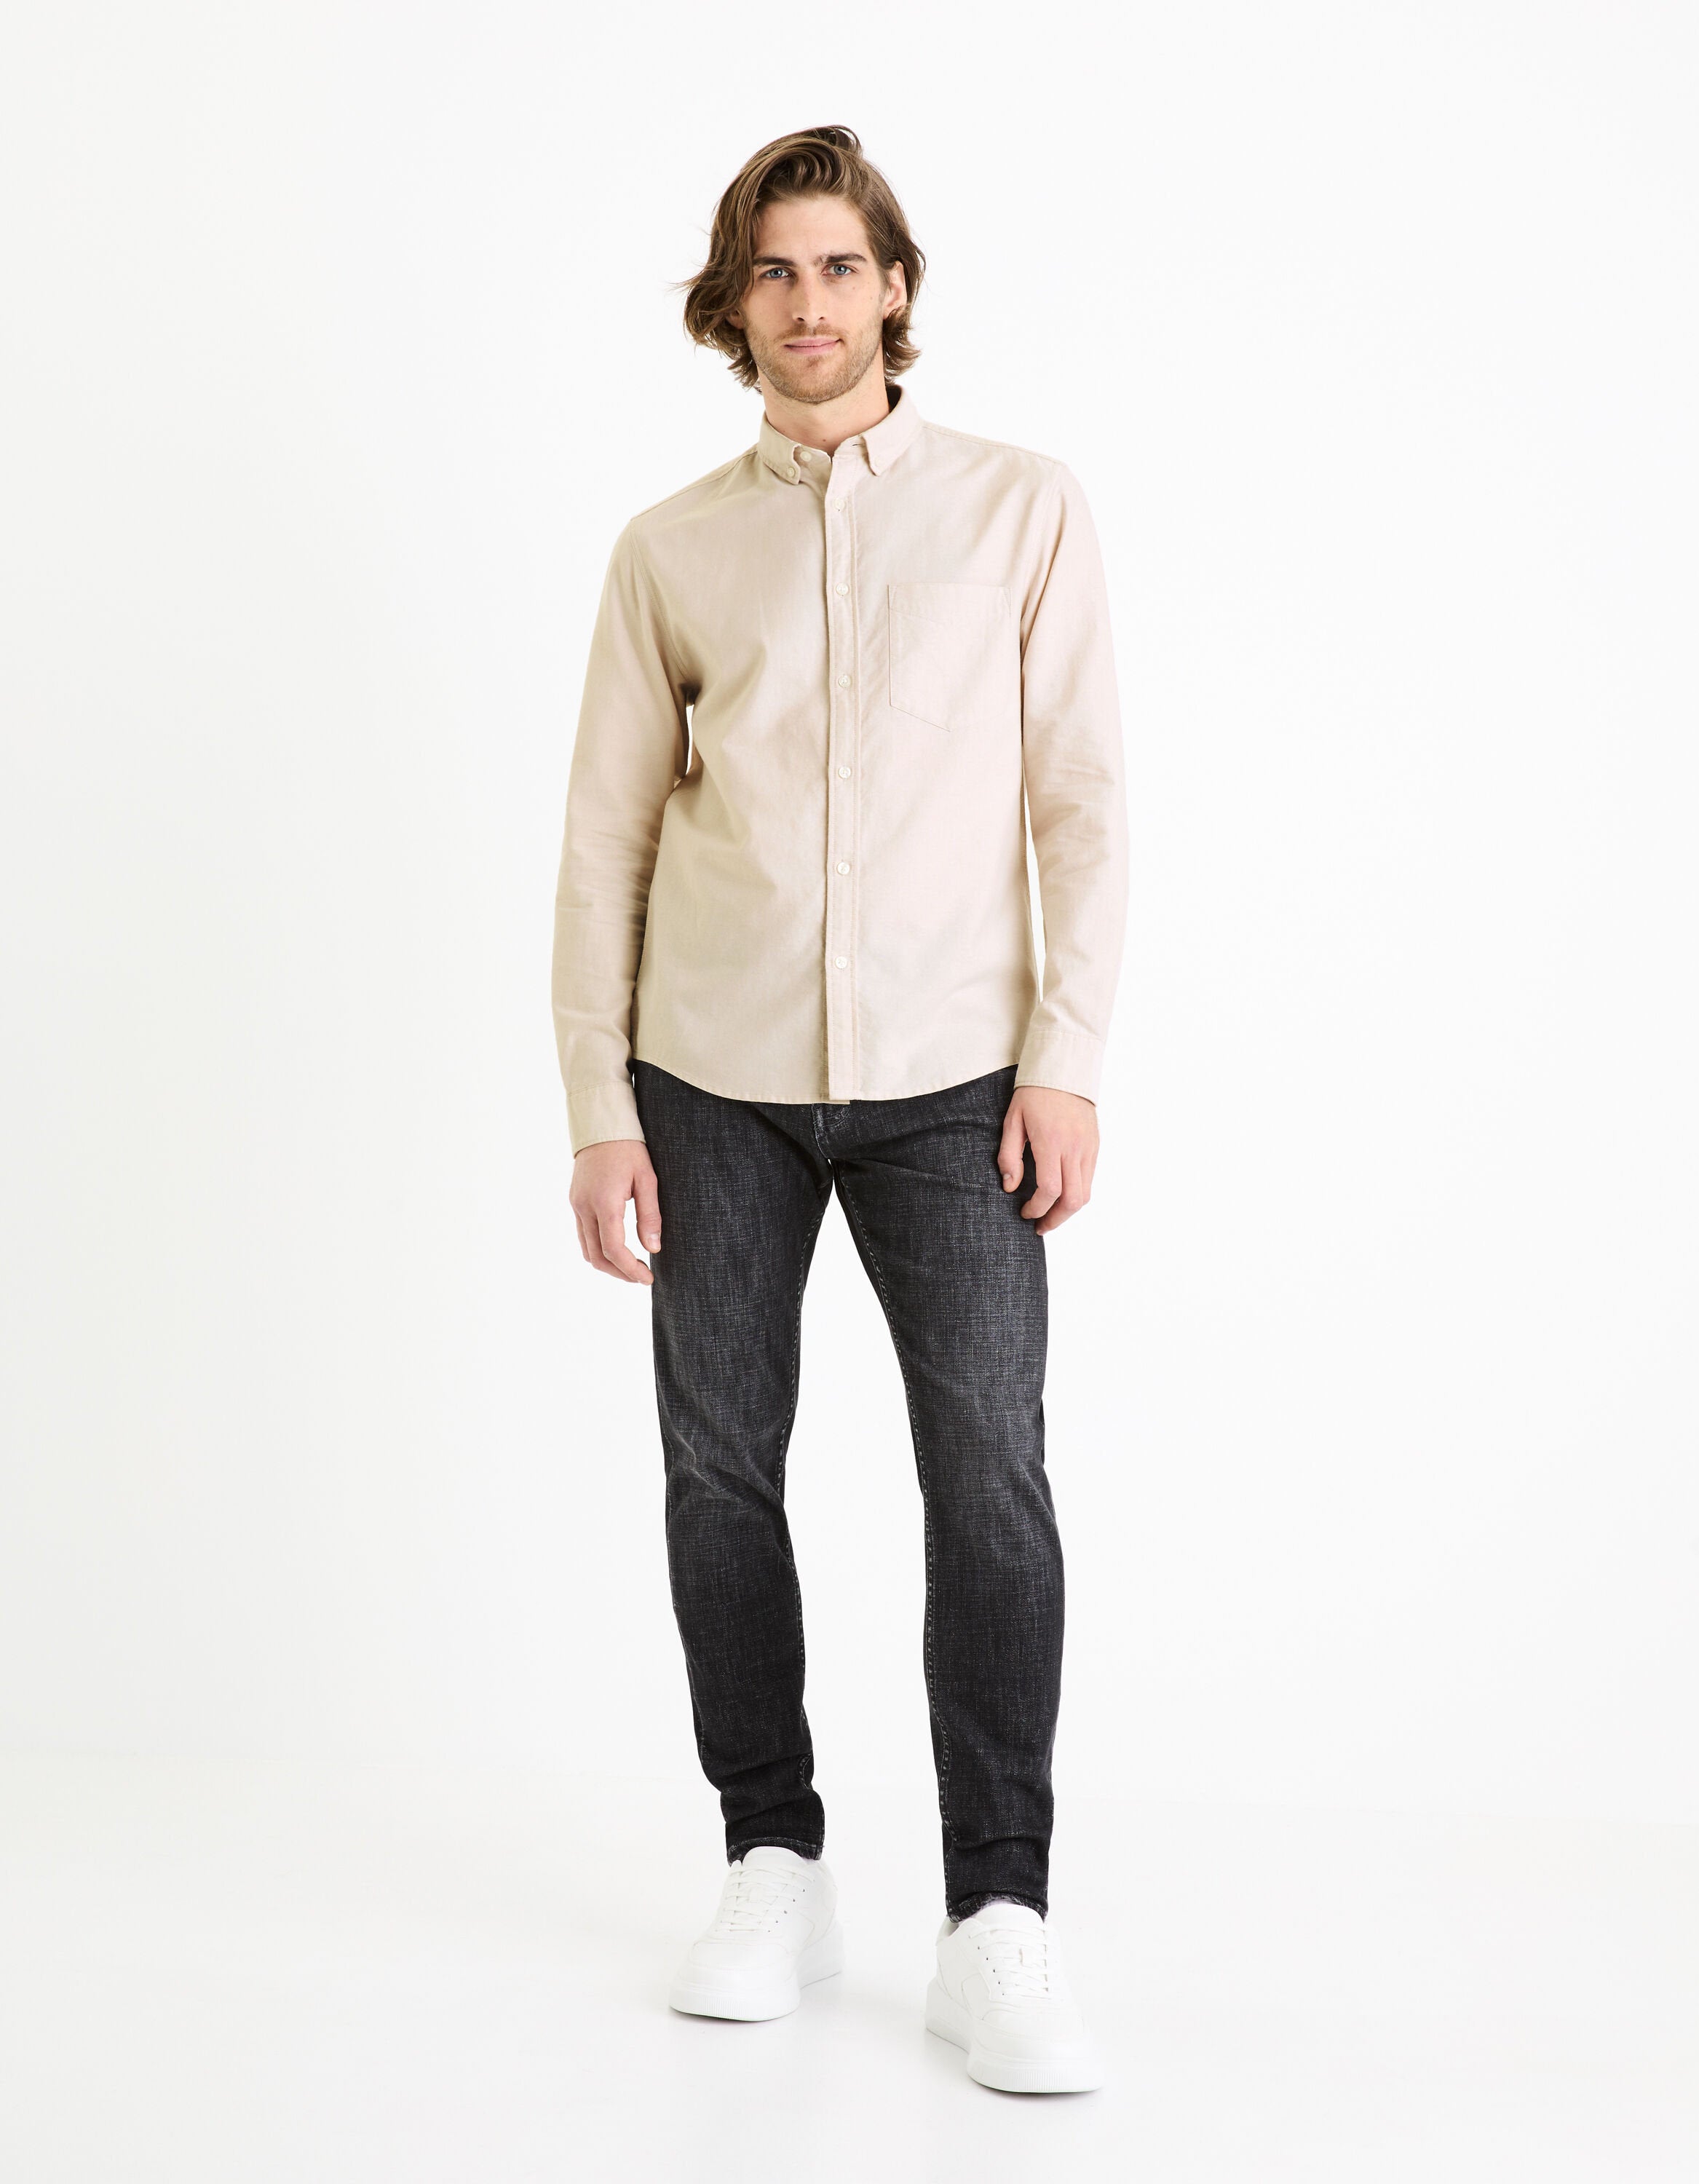 Regular Shirt 100% Oxford Cotton - Beige_DAXFORD_BEIGE_03